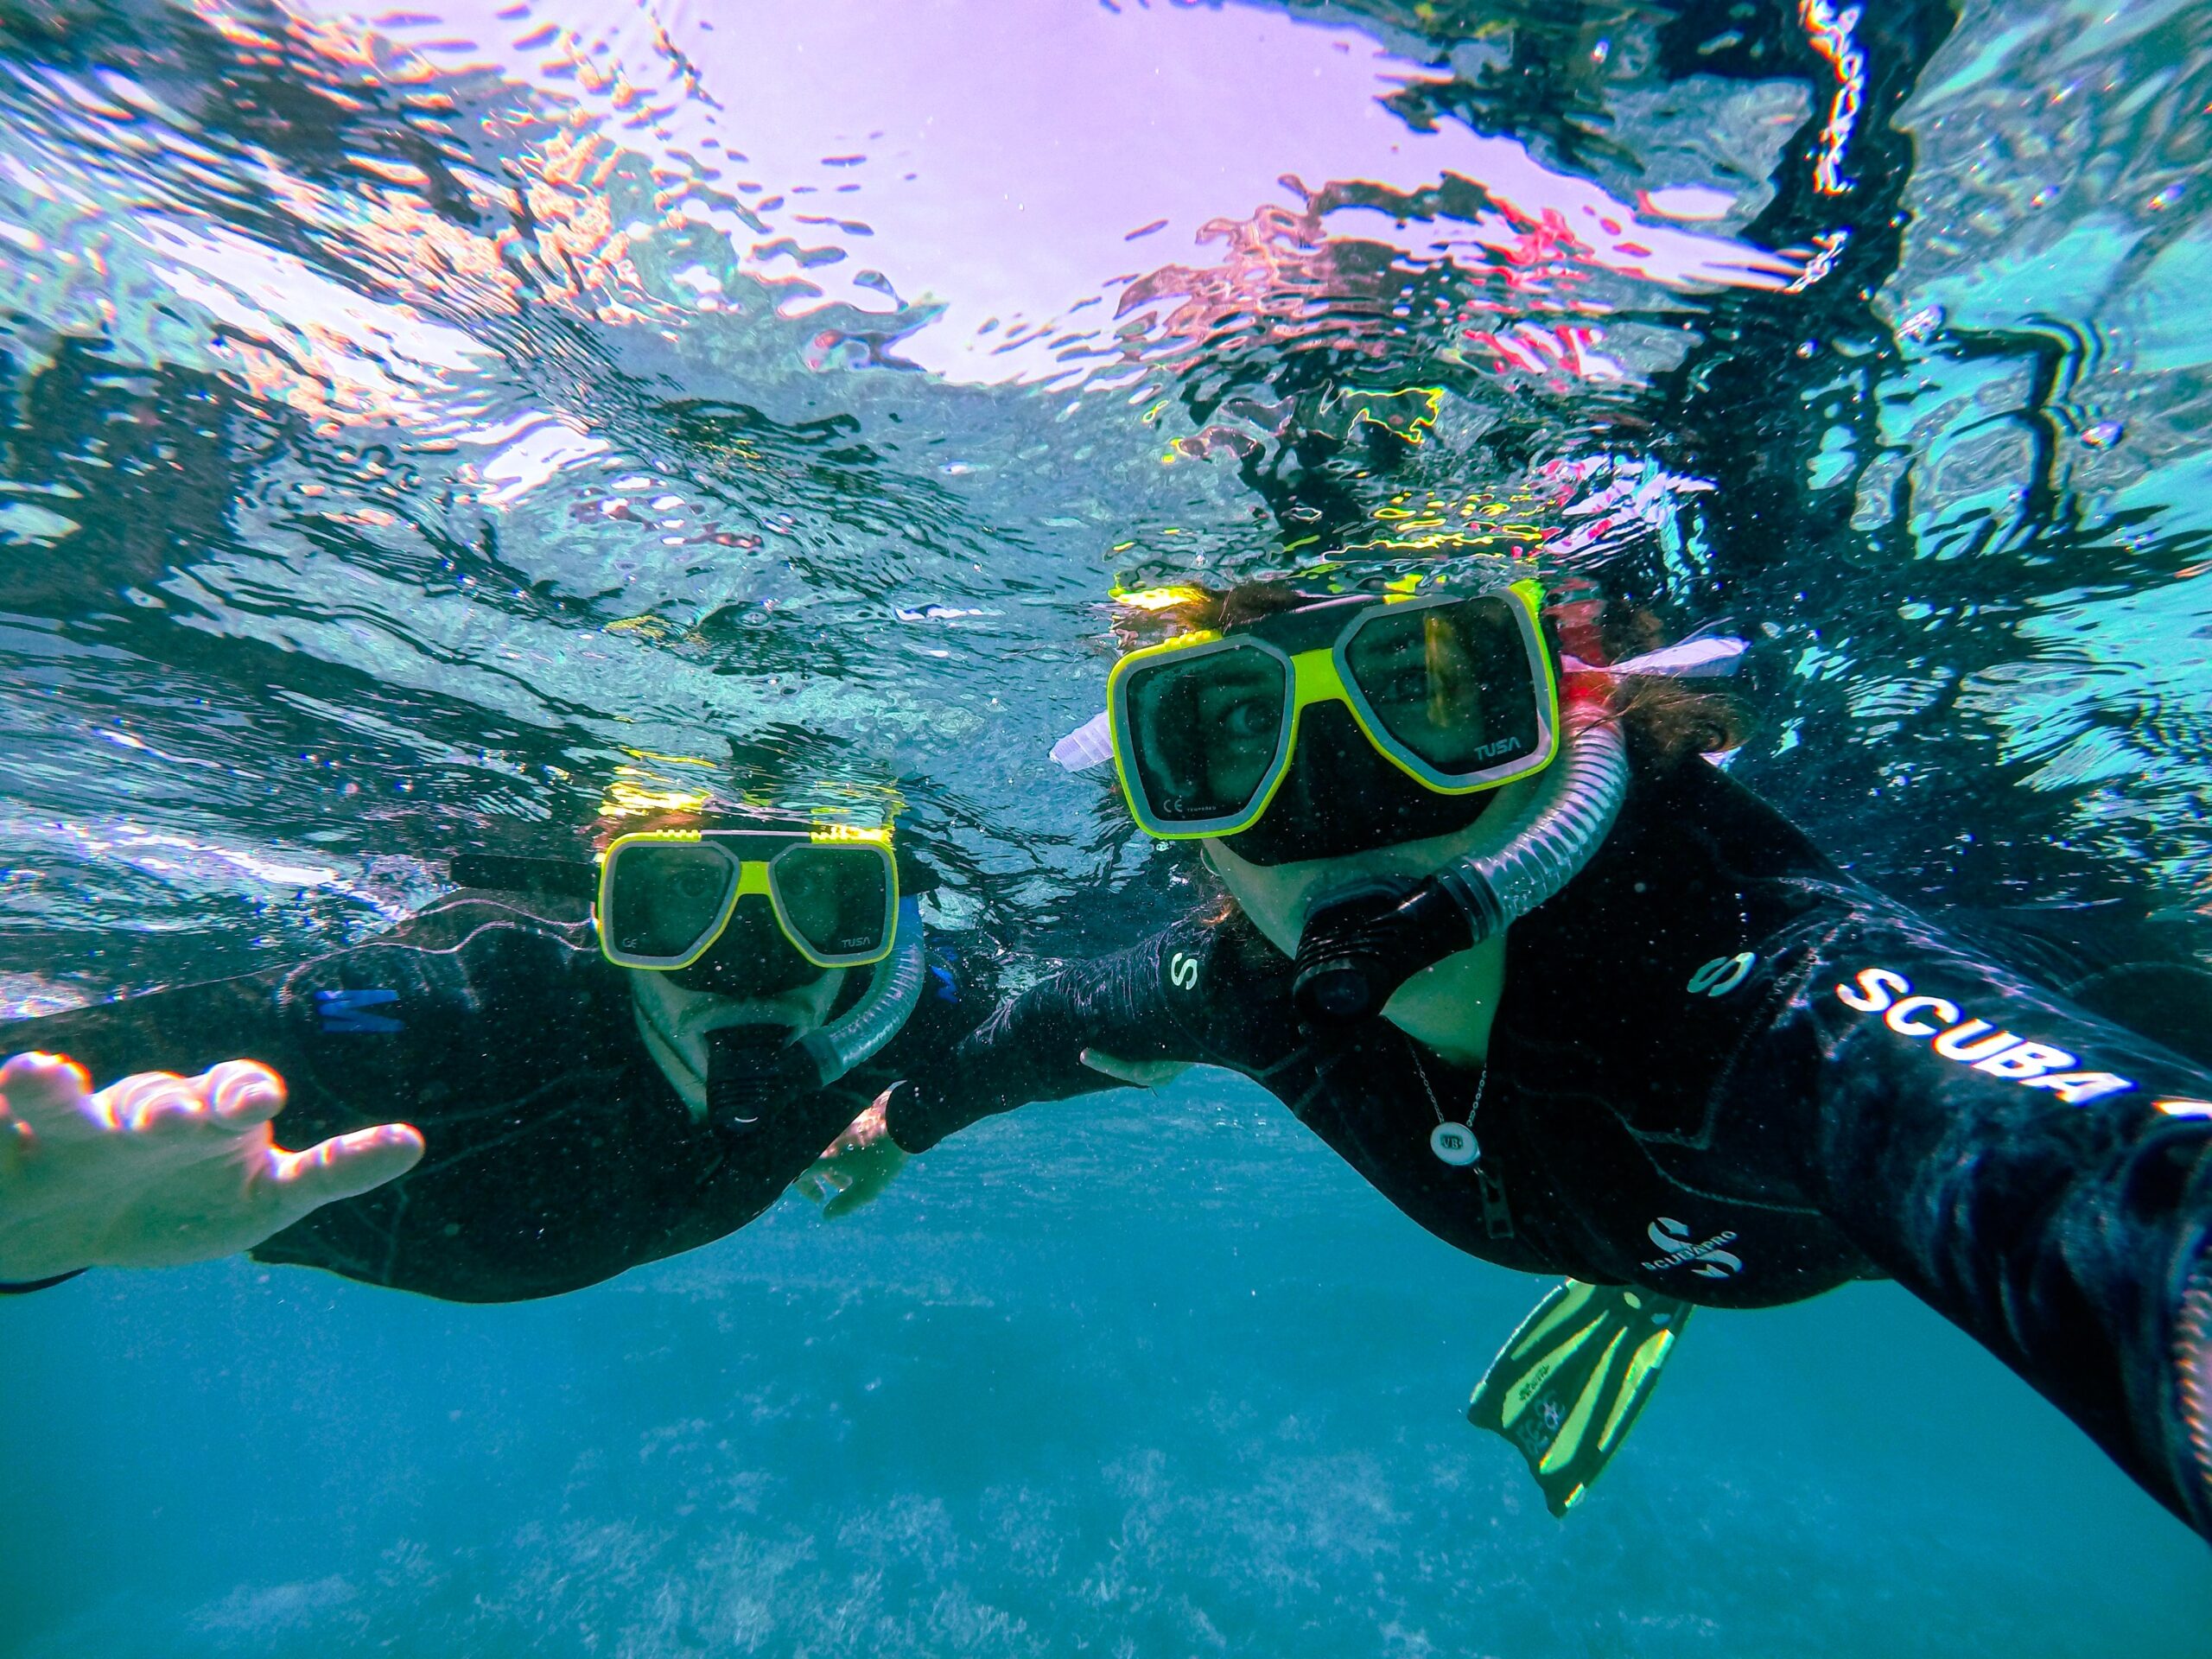 Scuba diving package in Aqaba Jordan - Jordan MW Tours